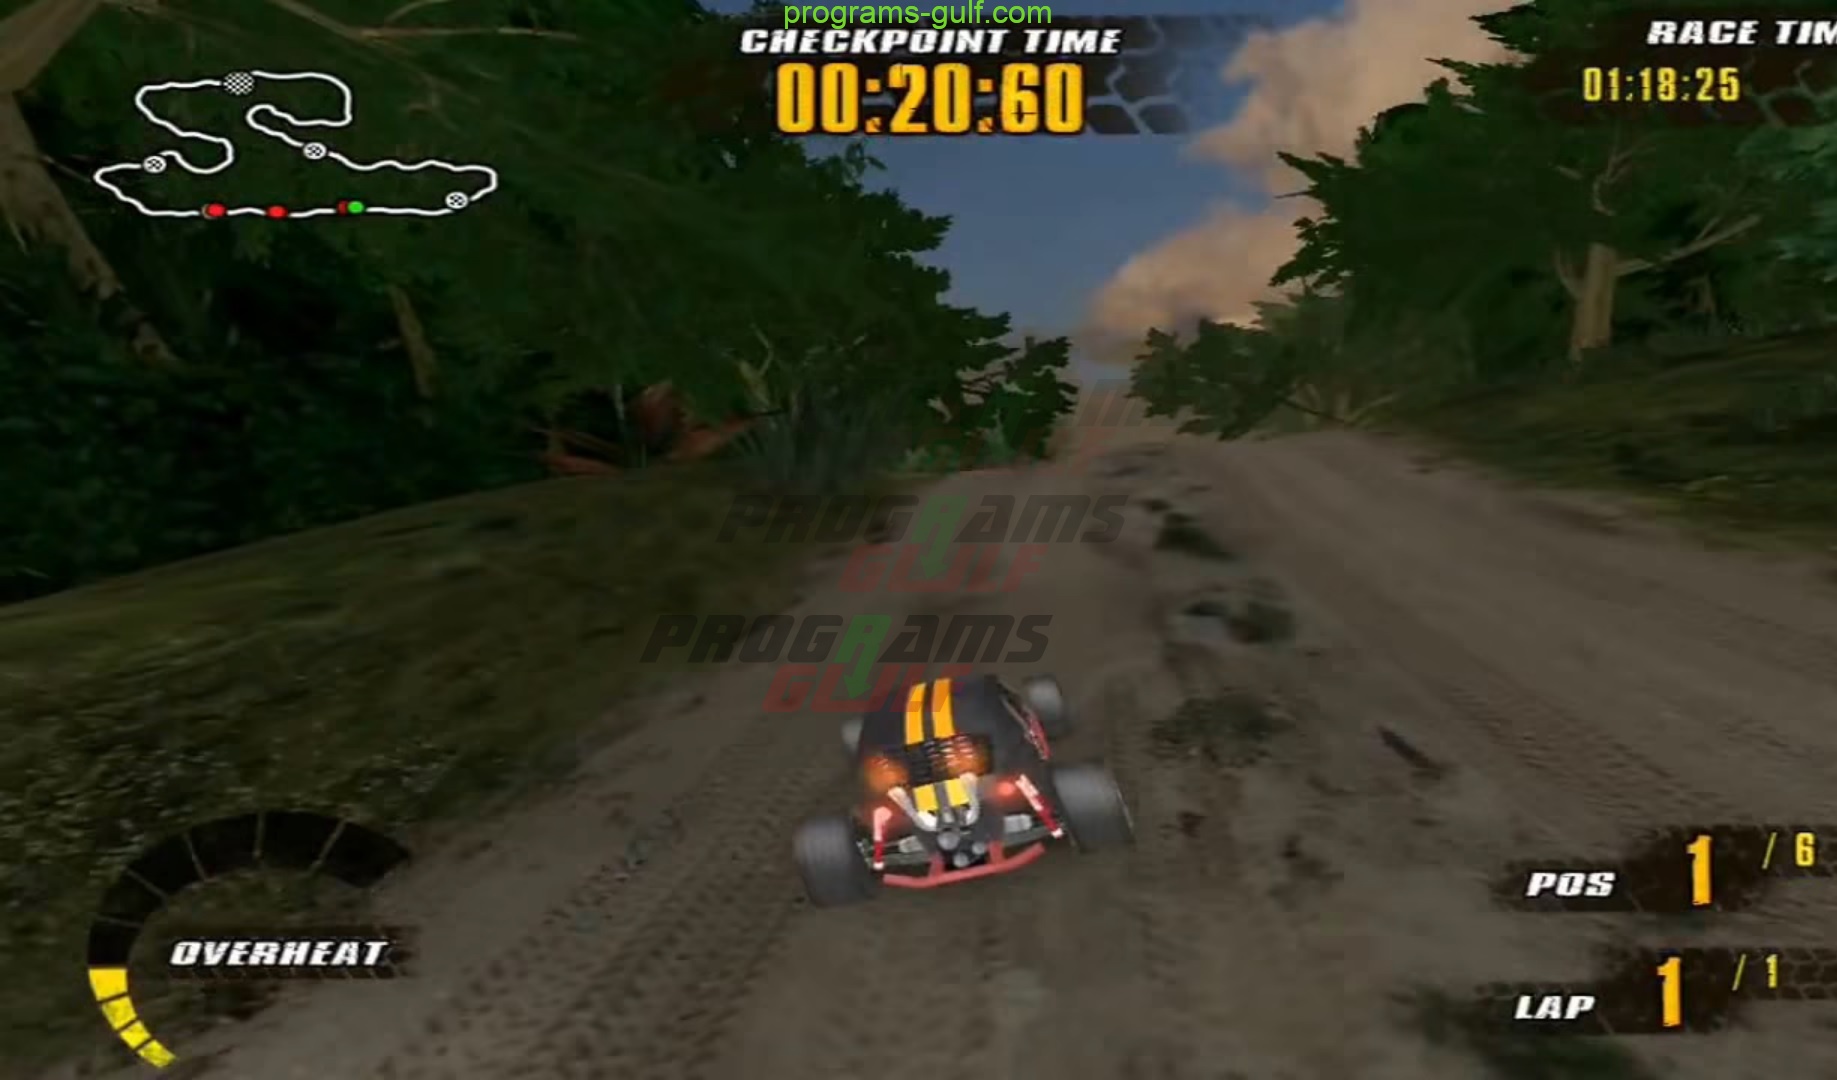 تحميل لعبة offroad racers للكمبيوتر